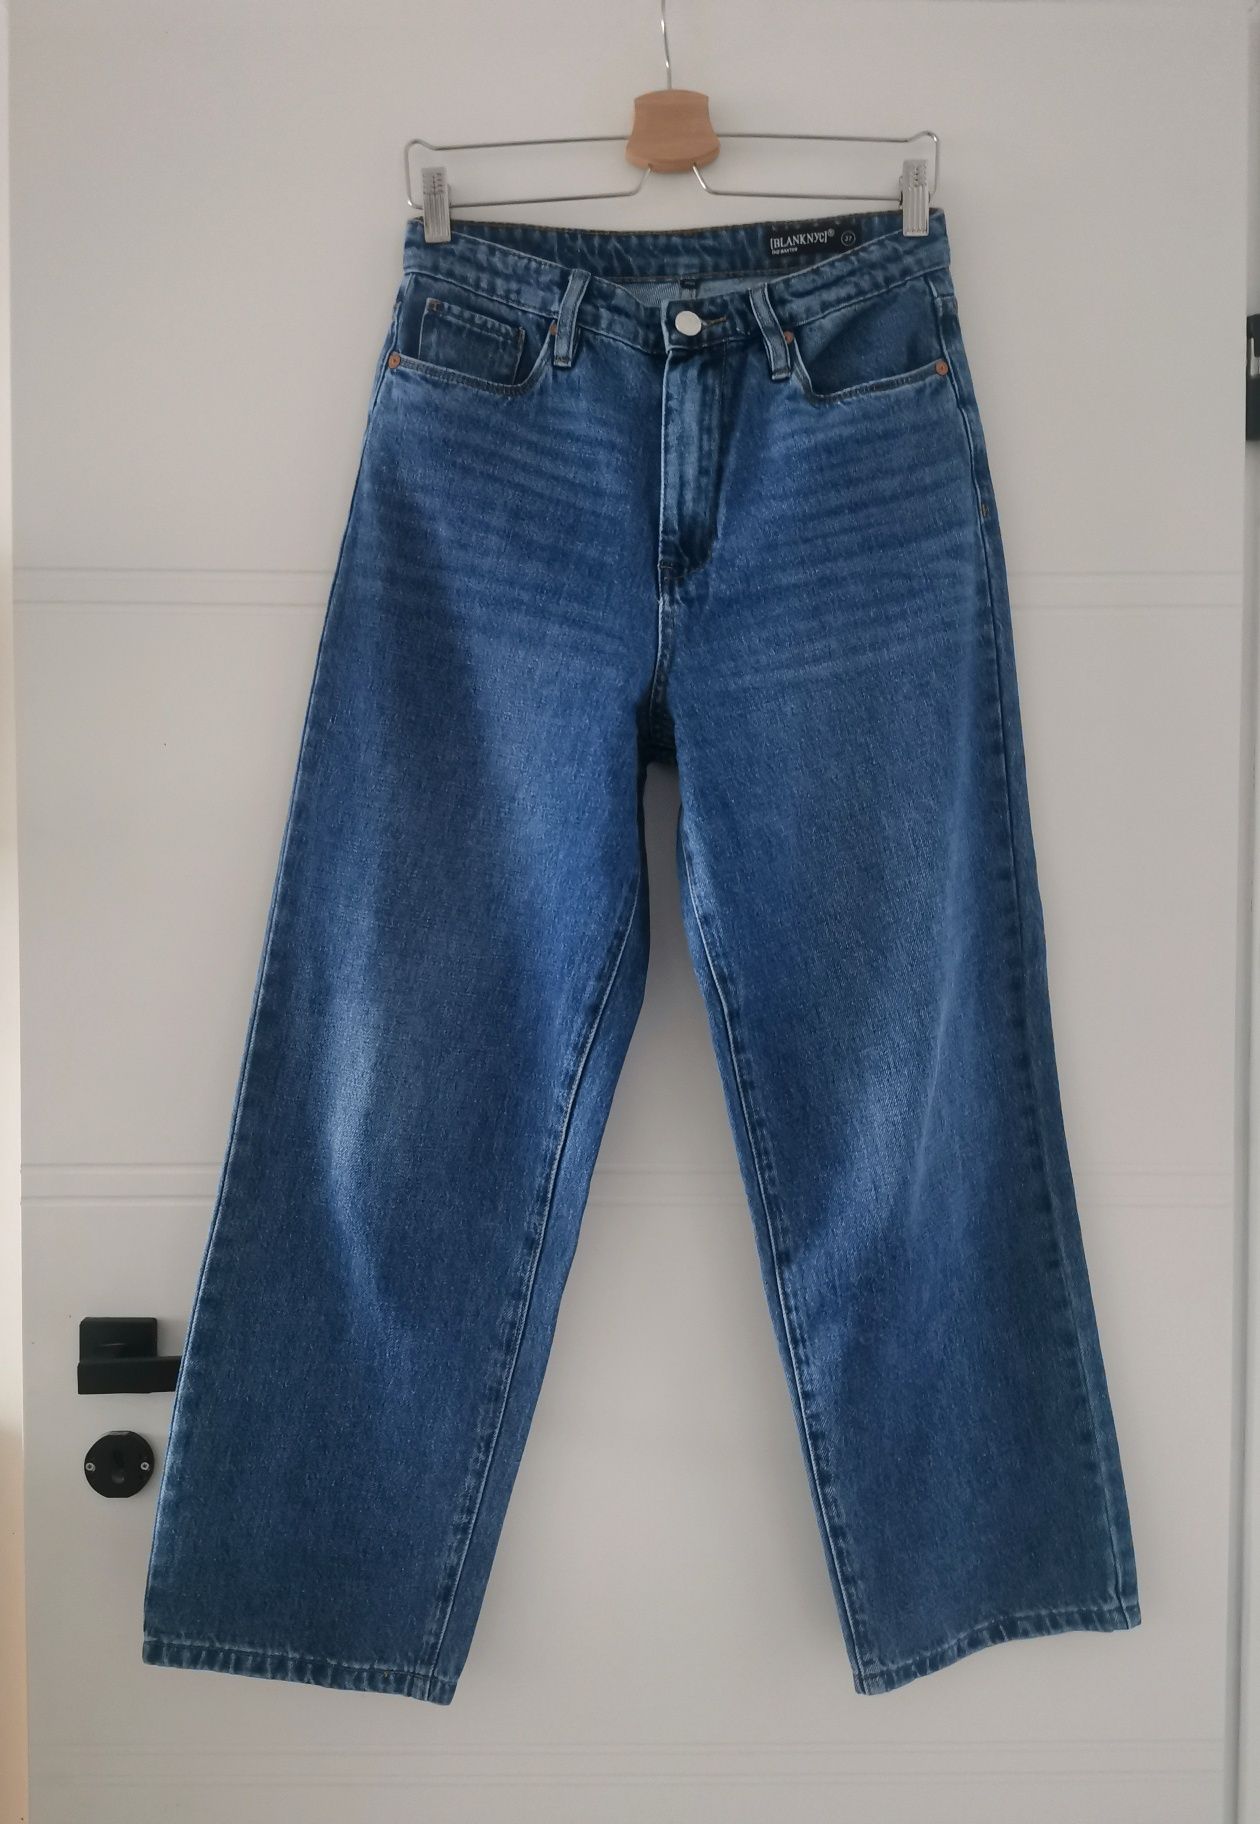 Nowe jeansy szeroka nogawka luksusowej marki BlankNyc The Baxter r.27